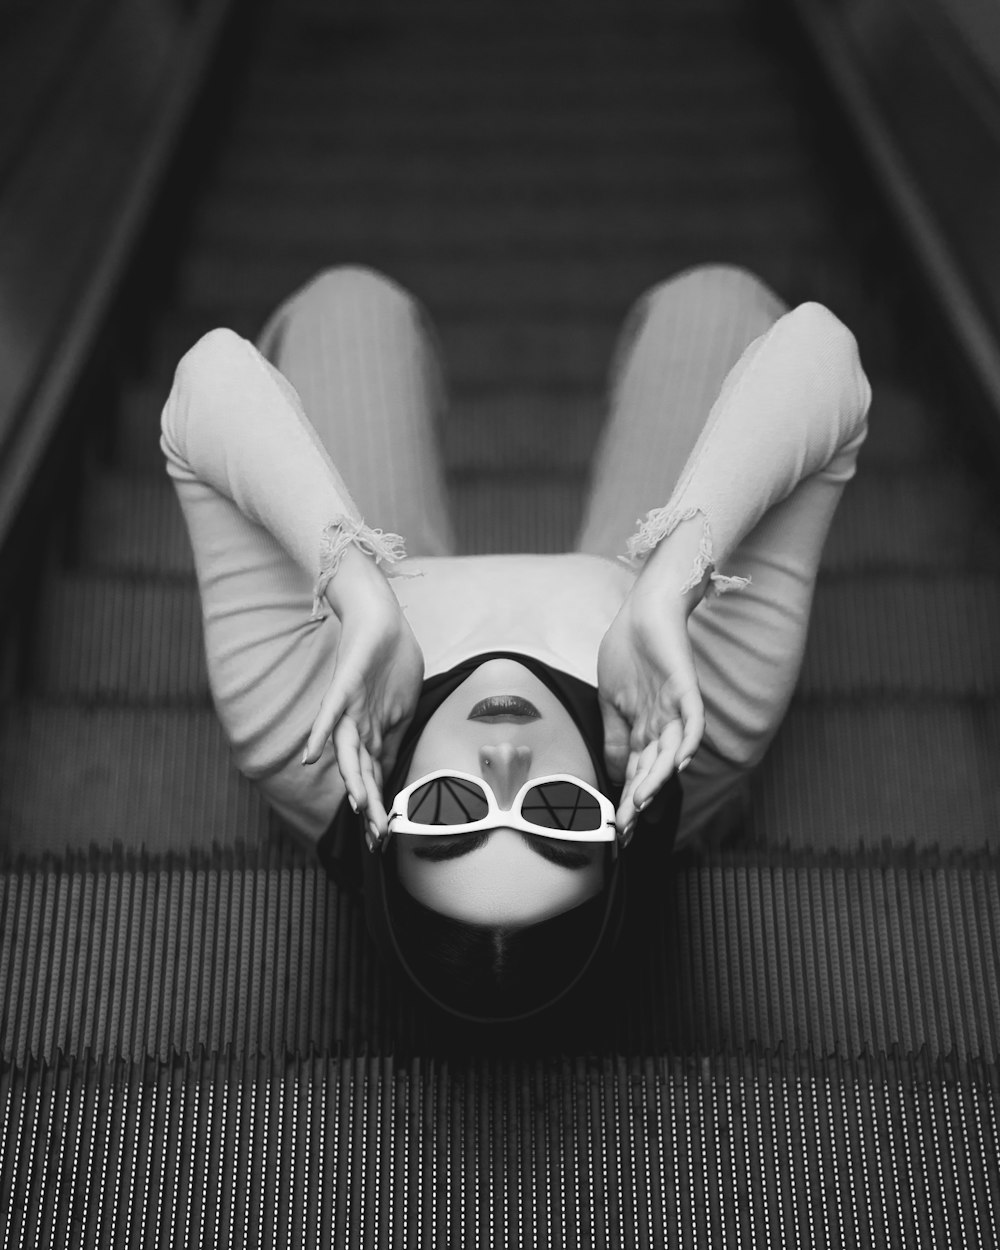 Une femme portant des lunettes de soleil allongée sur un escalator